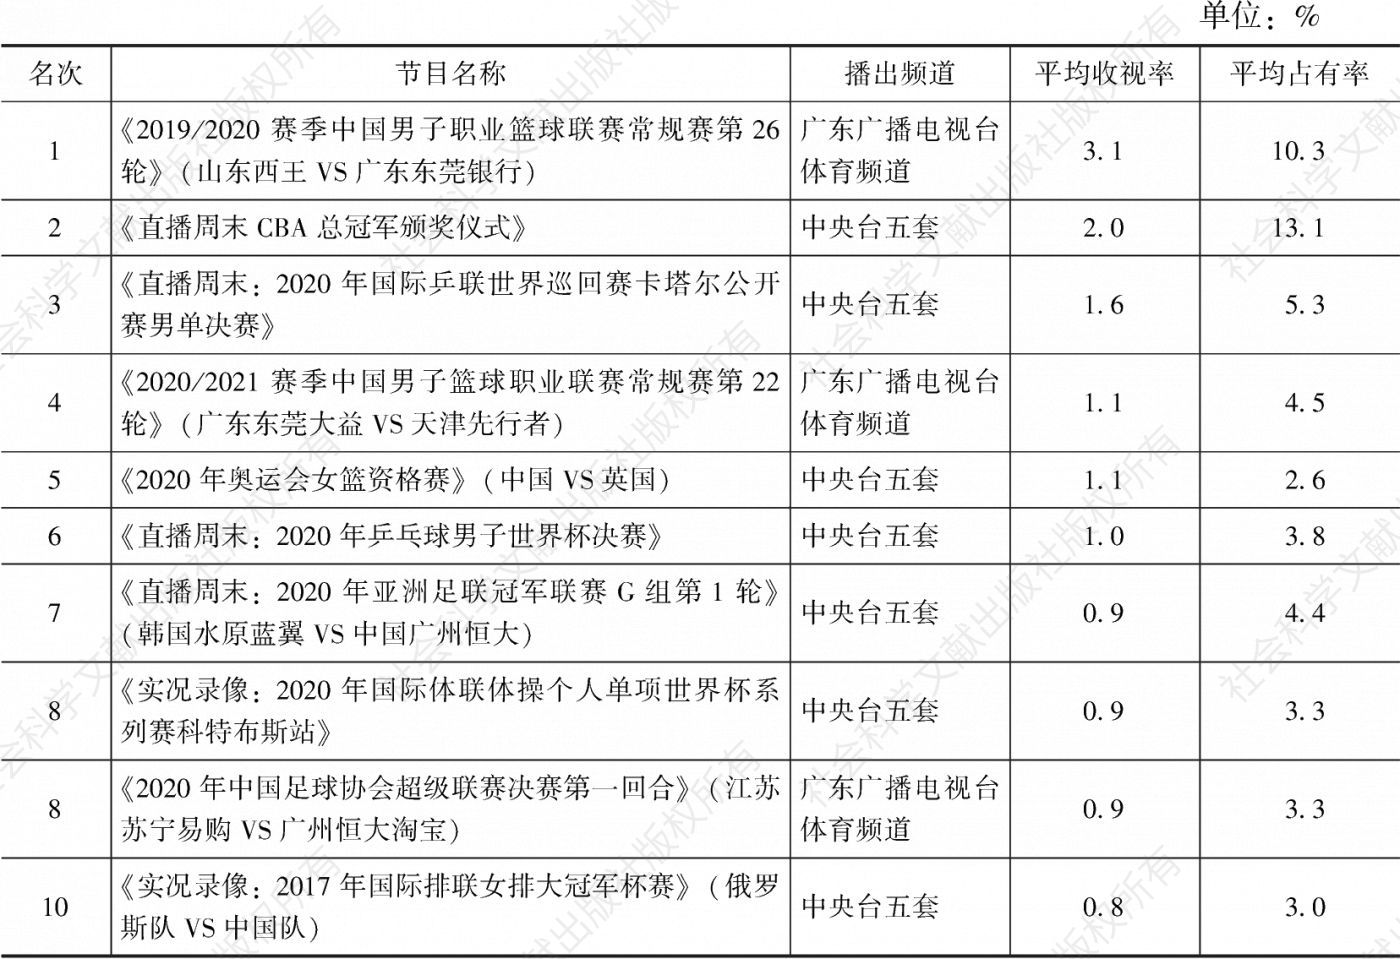 表3.5.12 2020年广东市场体育节目收视率排名前10